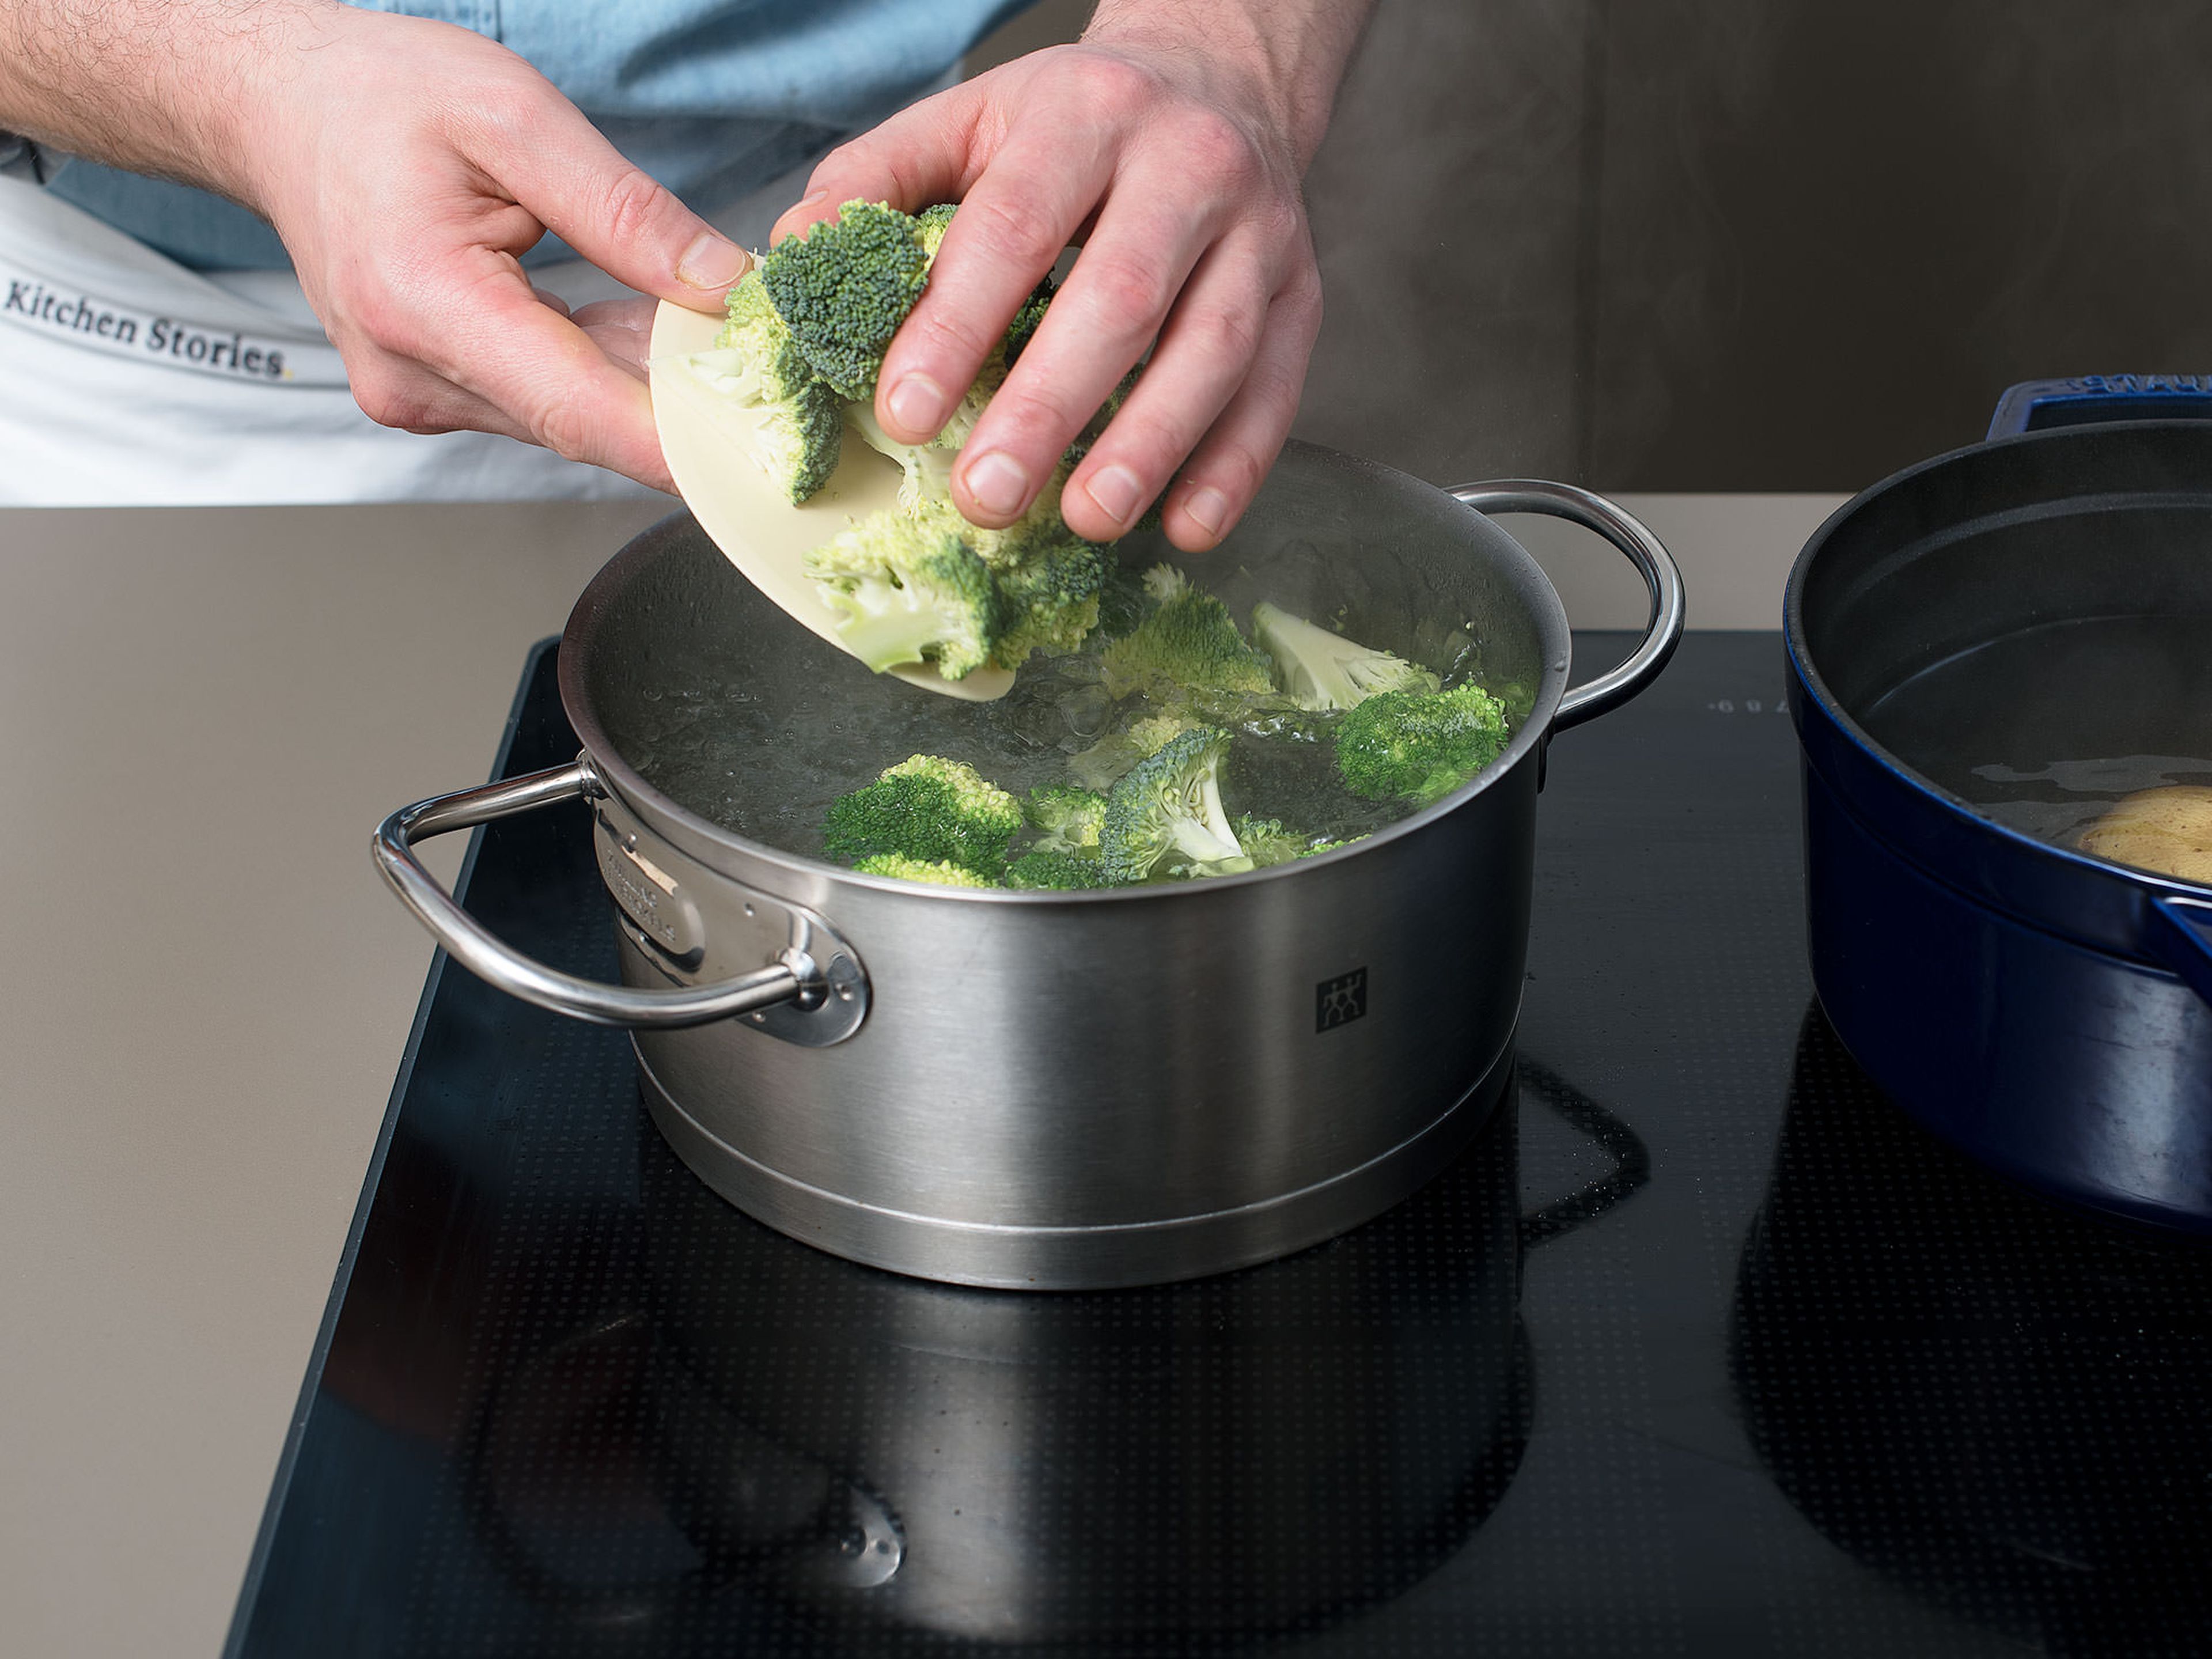 Einen zweiten Topf mit Wasser zum Kochen bringen. Brokkoliröschen vom Stängel schneiden und ca. 3 Min. köcheln bis sie bissfest sind. Unter kaltem Wasser abspülen und trocken tupfen.